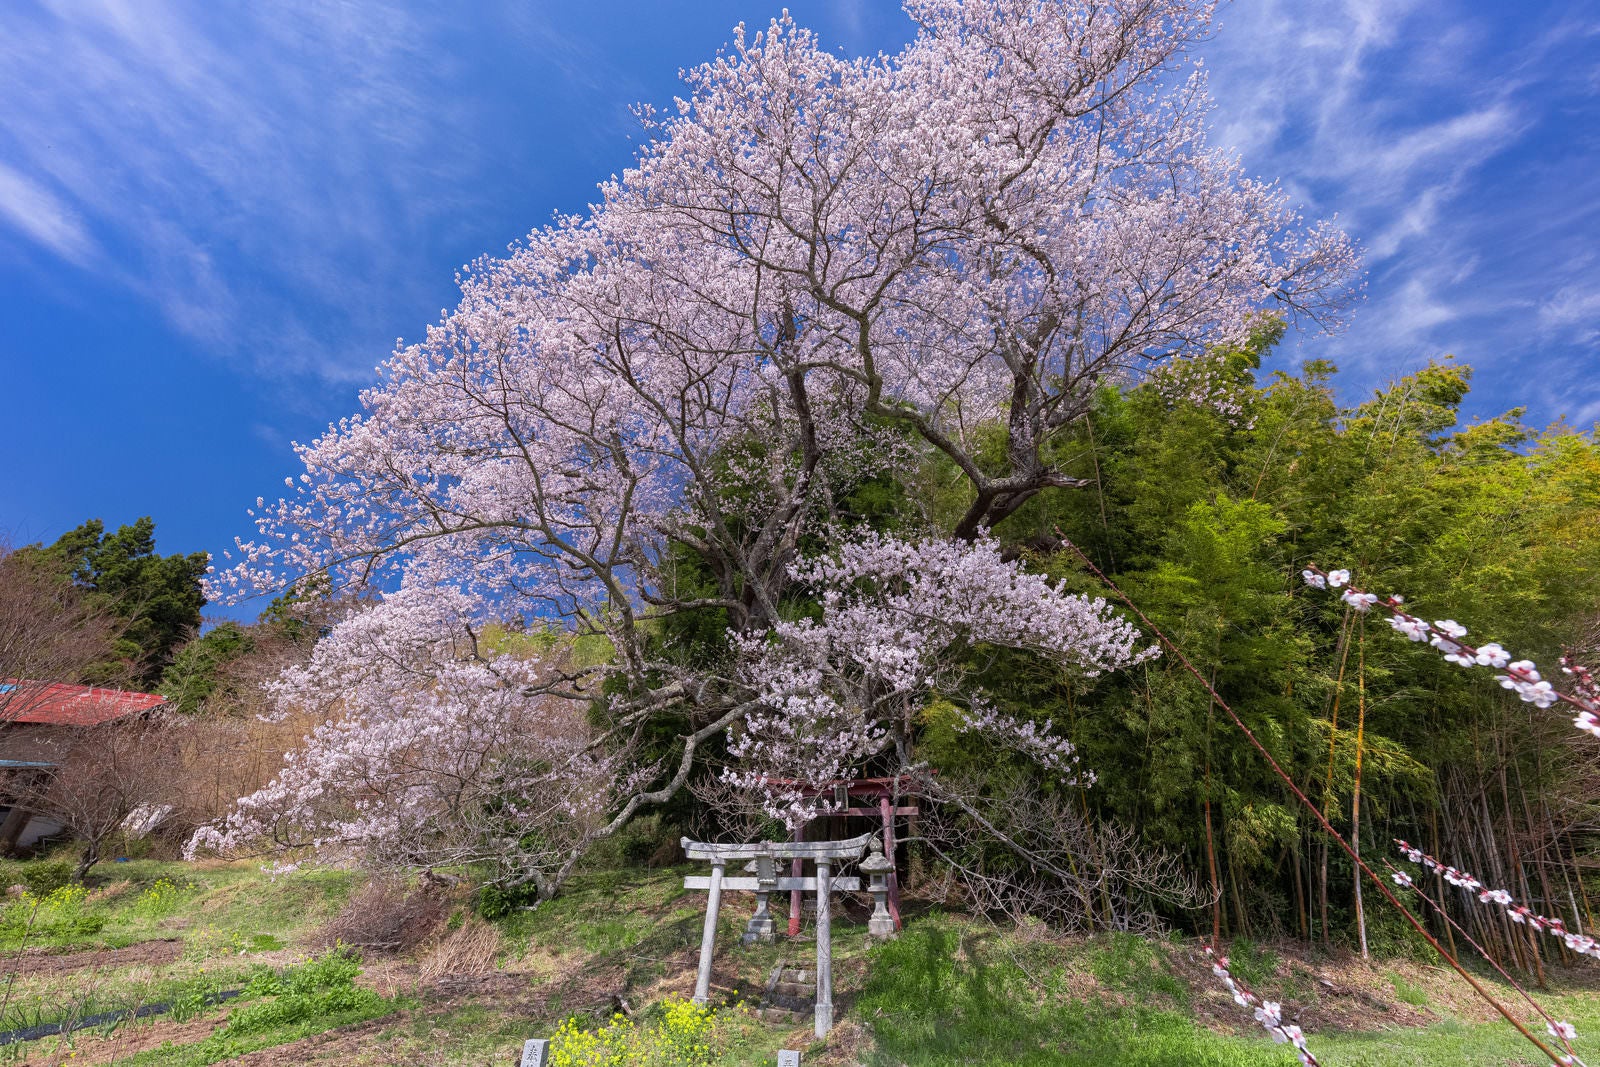 「大和田稲荷神社の竹林と子授け櫻」の写真